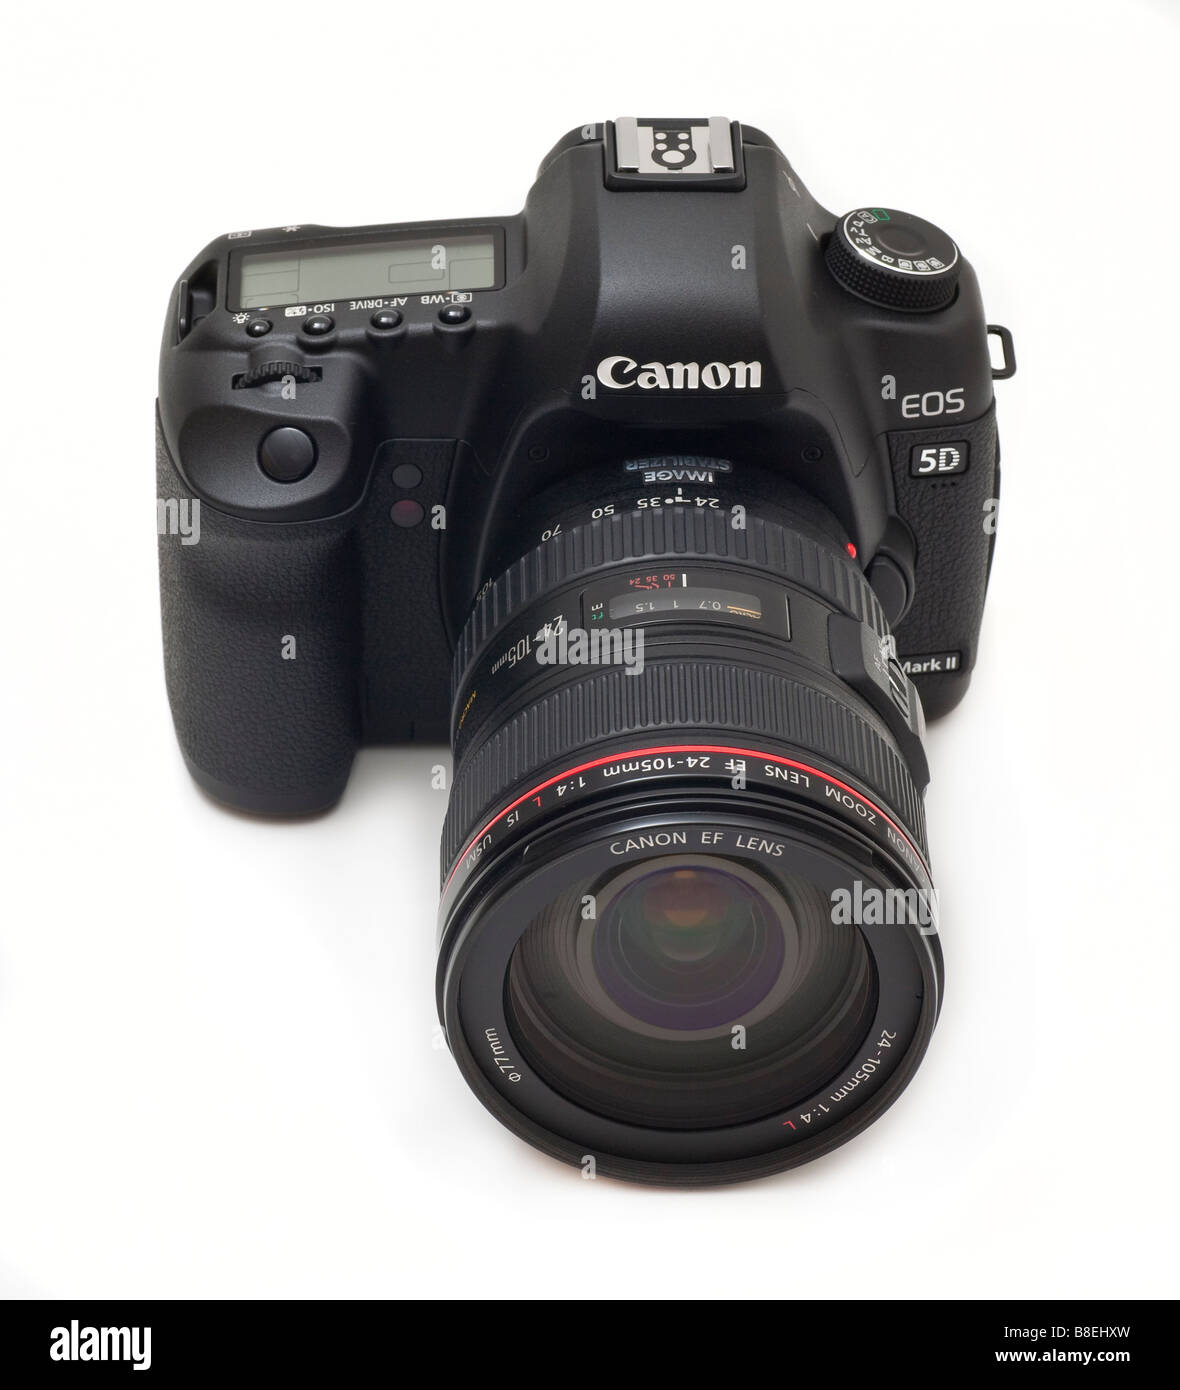 Canon 5D MkII digial 24-105mm appareil photo reflex avec objectif zoom série L, 21mp capteur CMOS Banque D'Images